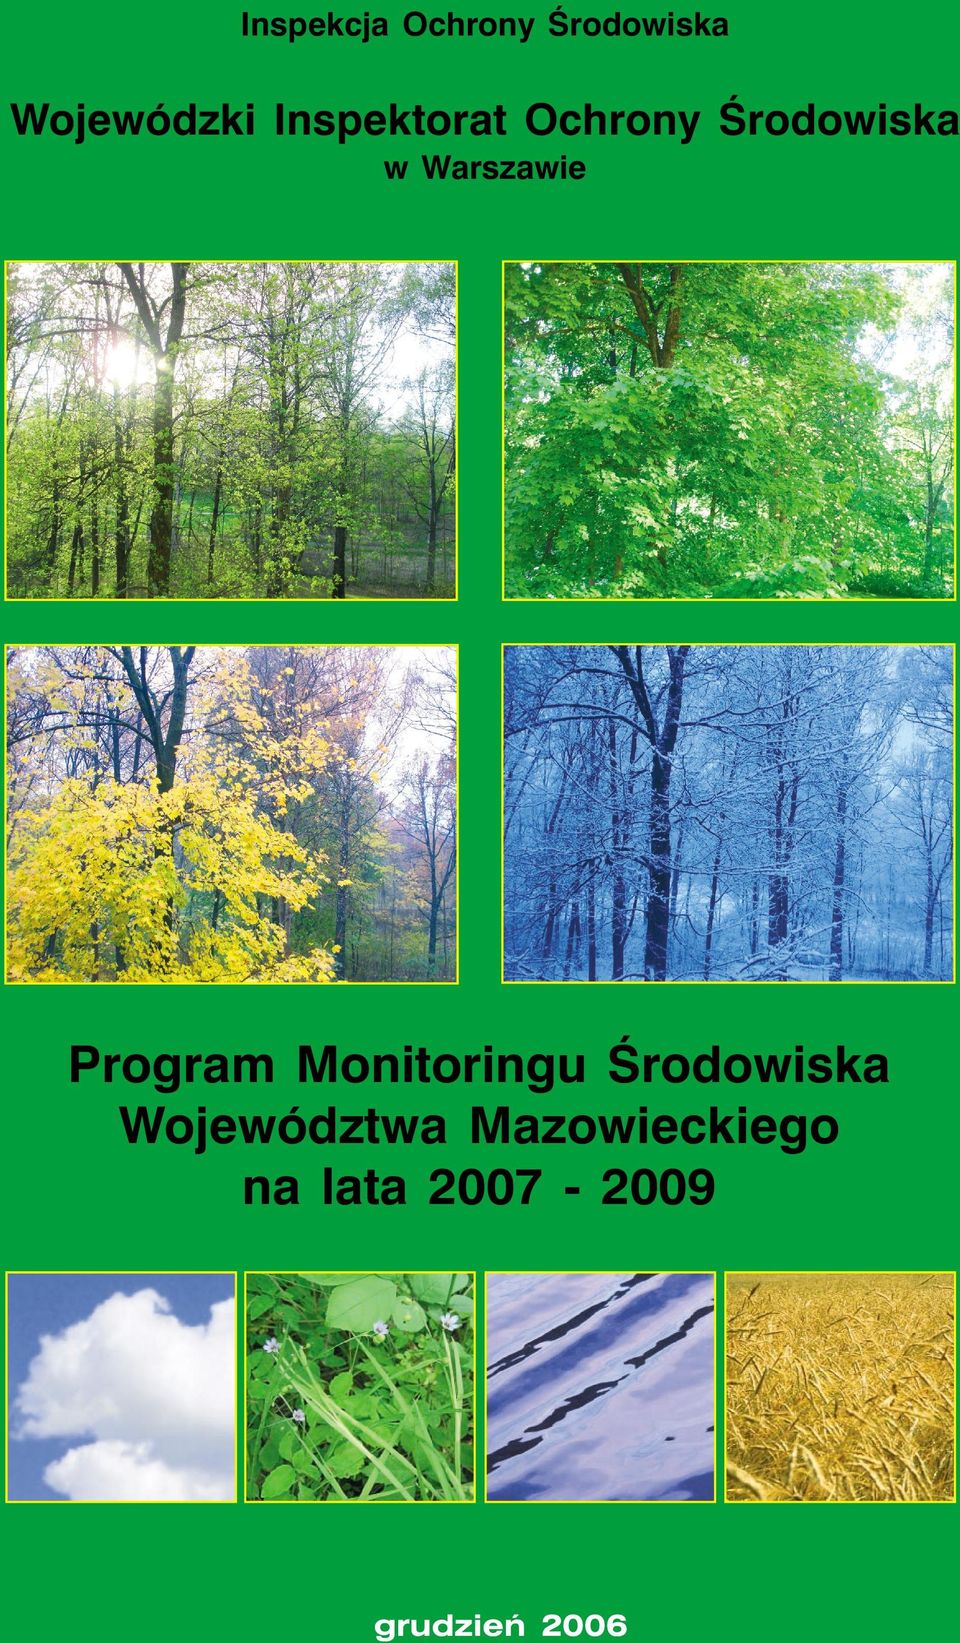 Program Monitoringu Ârodowiska Województwa